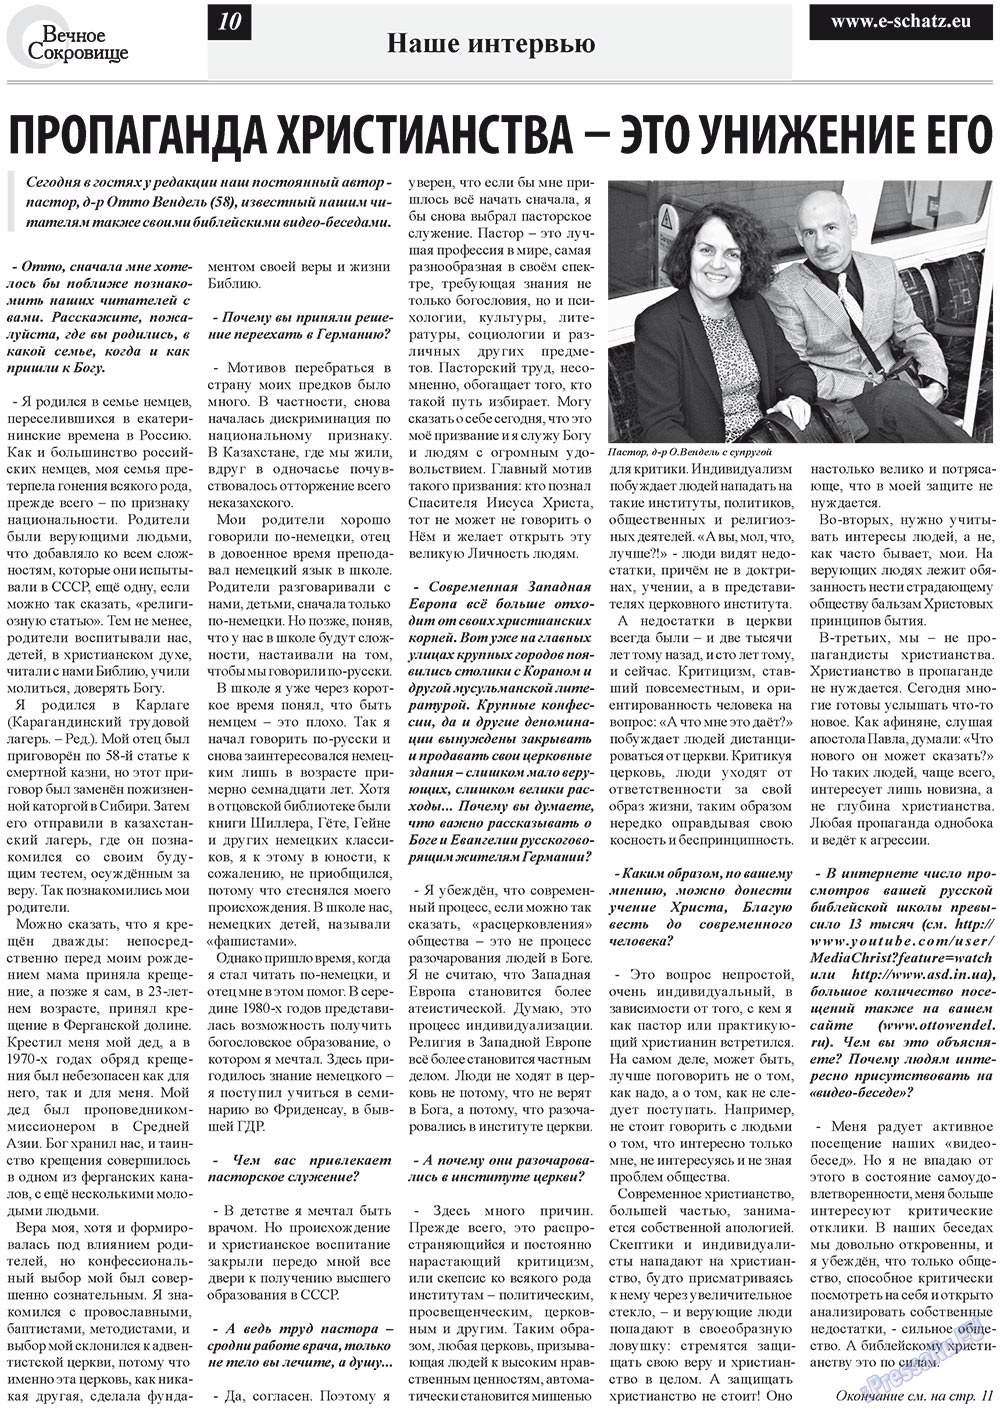 Вечное сокровище (газета). 2012 год, номер 4, стр. 10